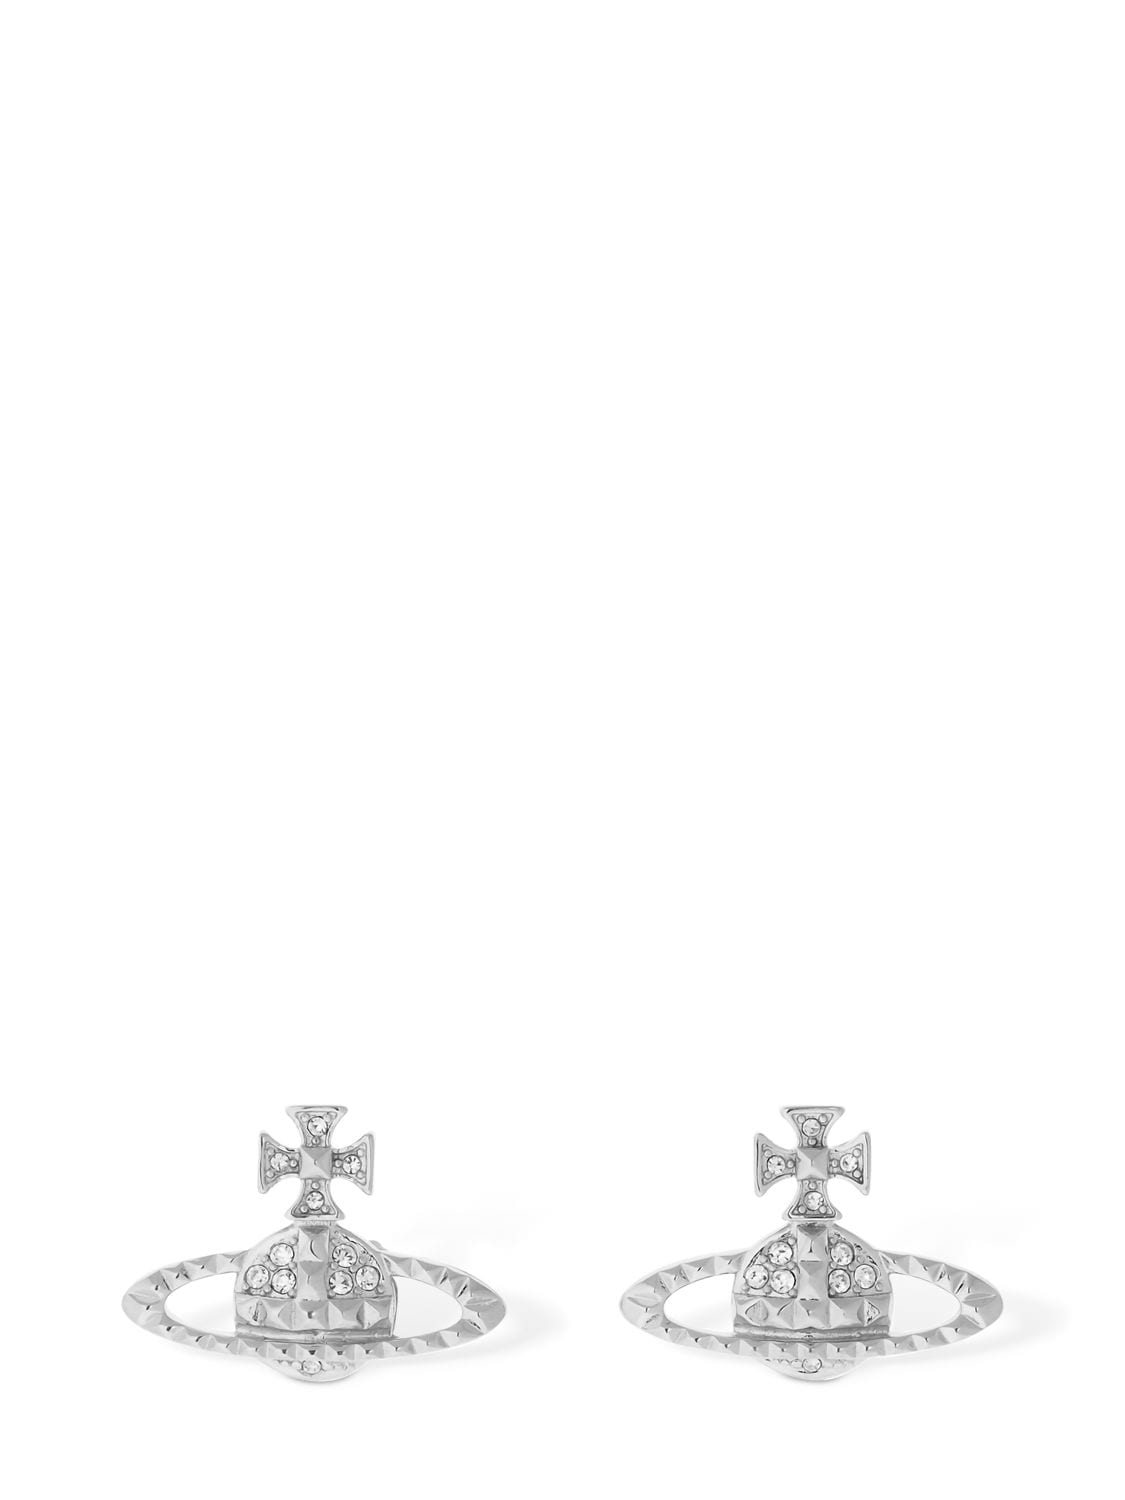 Vivienne Westwood Mayfair Bas Relief Stud Earrings In Silver